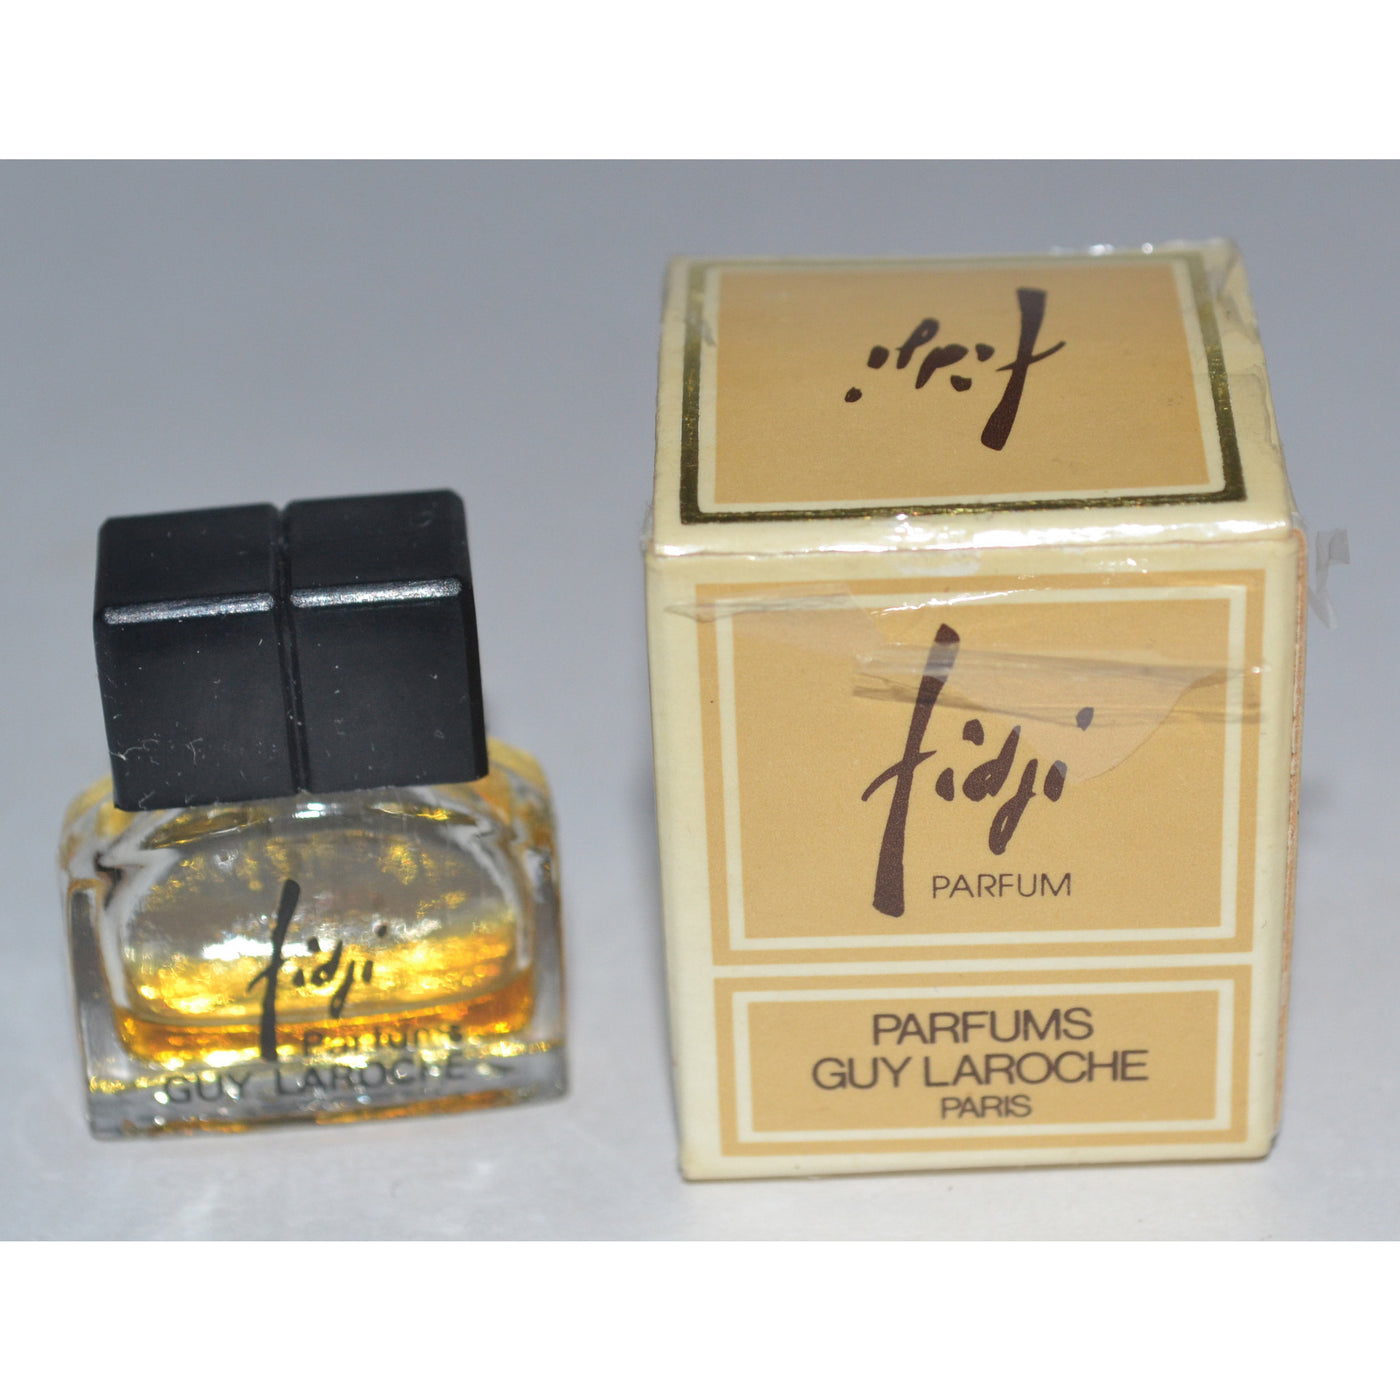 Vintage Fidji Parfum Mini By Guy Laroche 